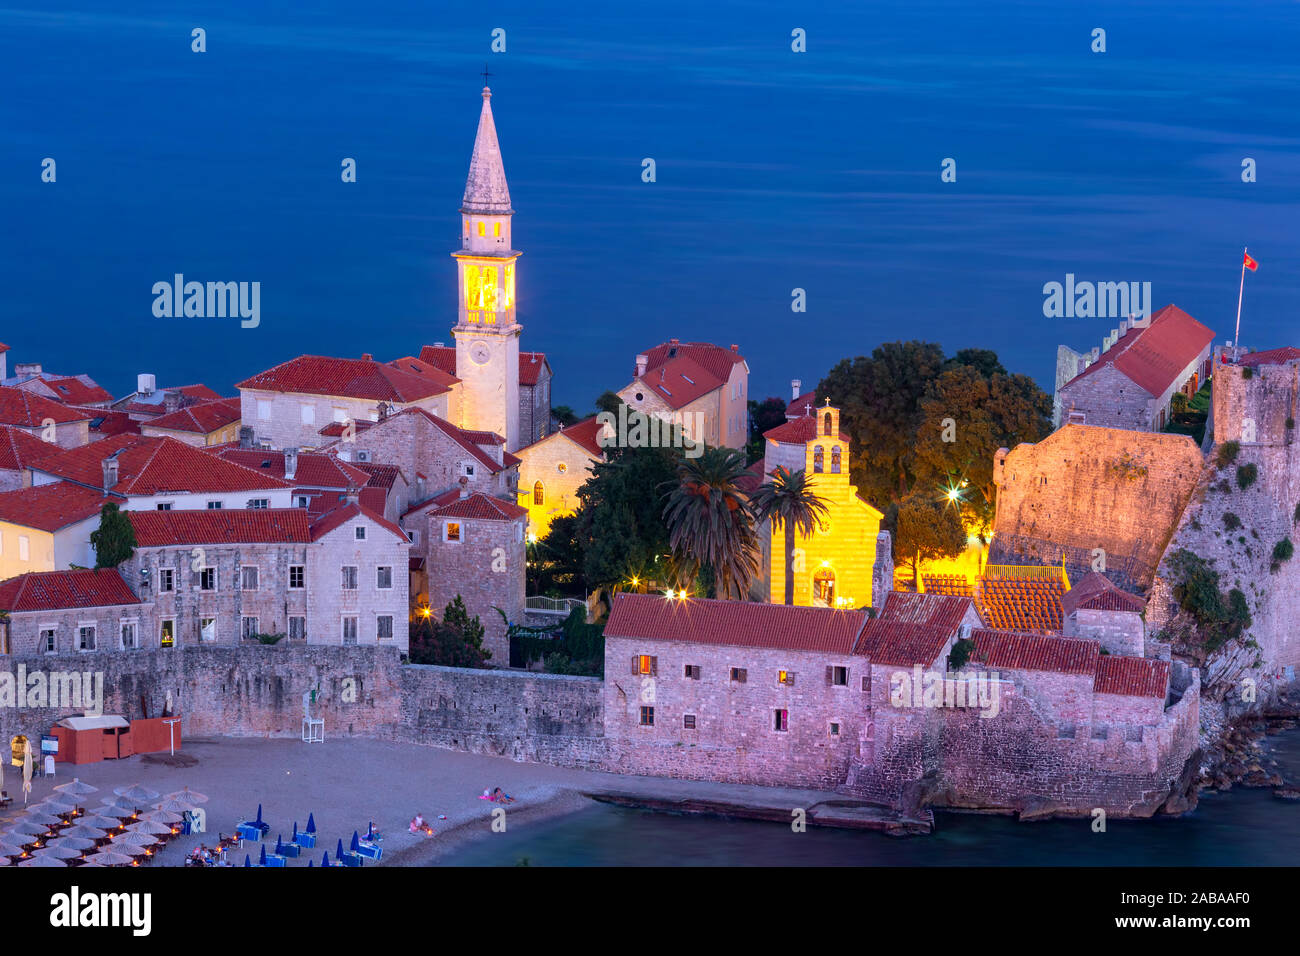 Vue aérienne de nuit saint Ivan et Sainte Trinité églises dans la vieille ville de Budva ville monténégrine sur la mer Adriatique, le Monténégro Banque D'Images